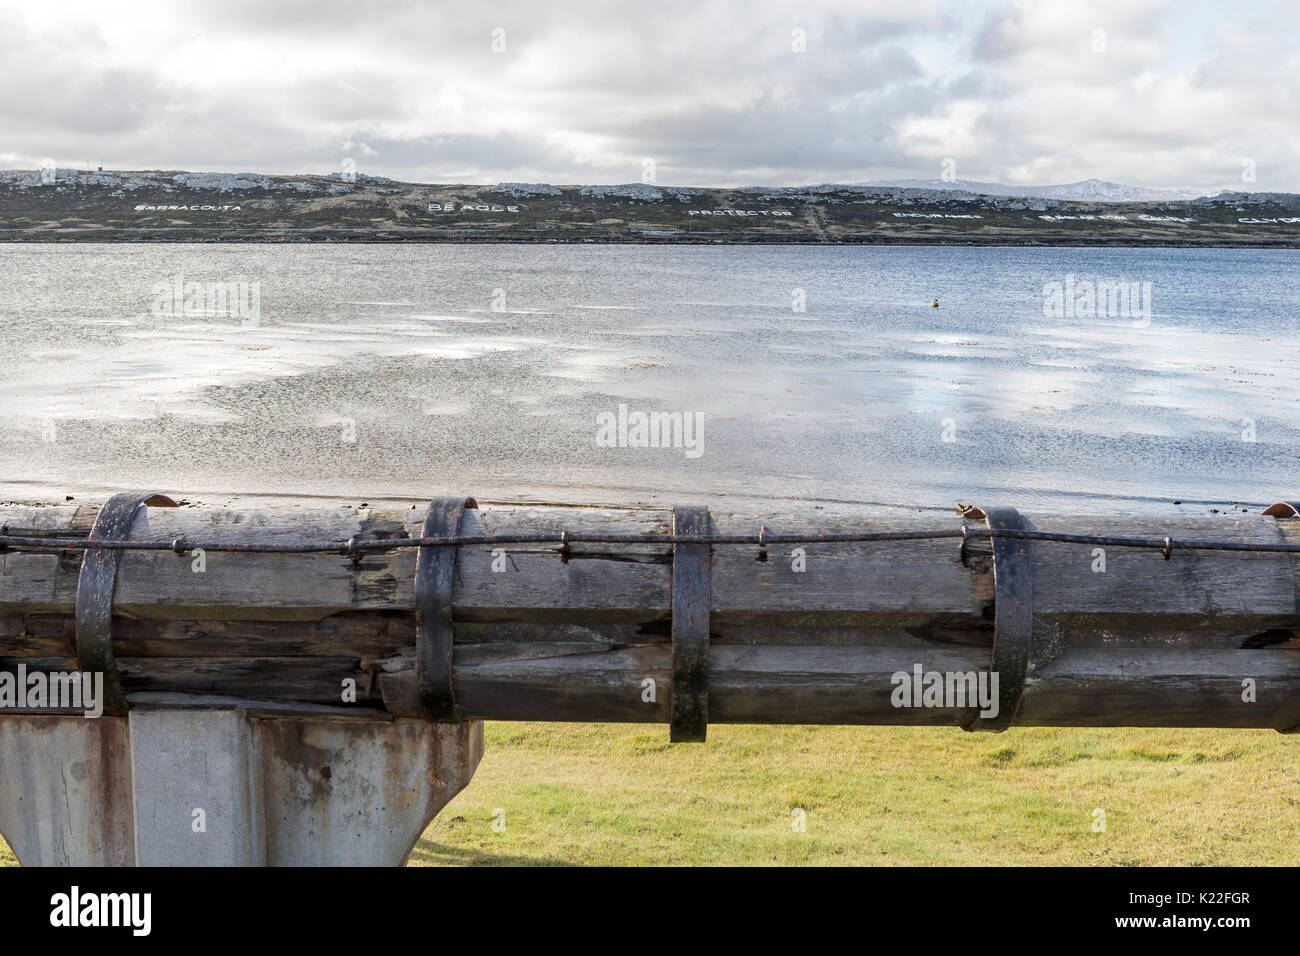 Mât de misaine Grande-bretagne - Port Stanley Green Victoire Iles Falkland (Malvinas)  + les noms des navires de guerre Guerre de 1982 Banque D'Images